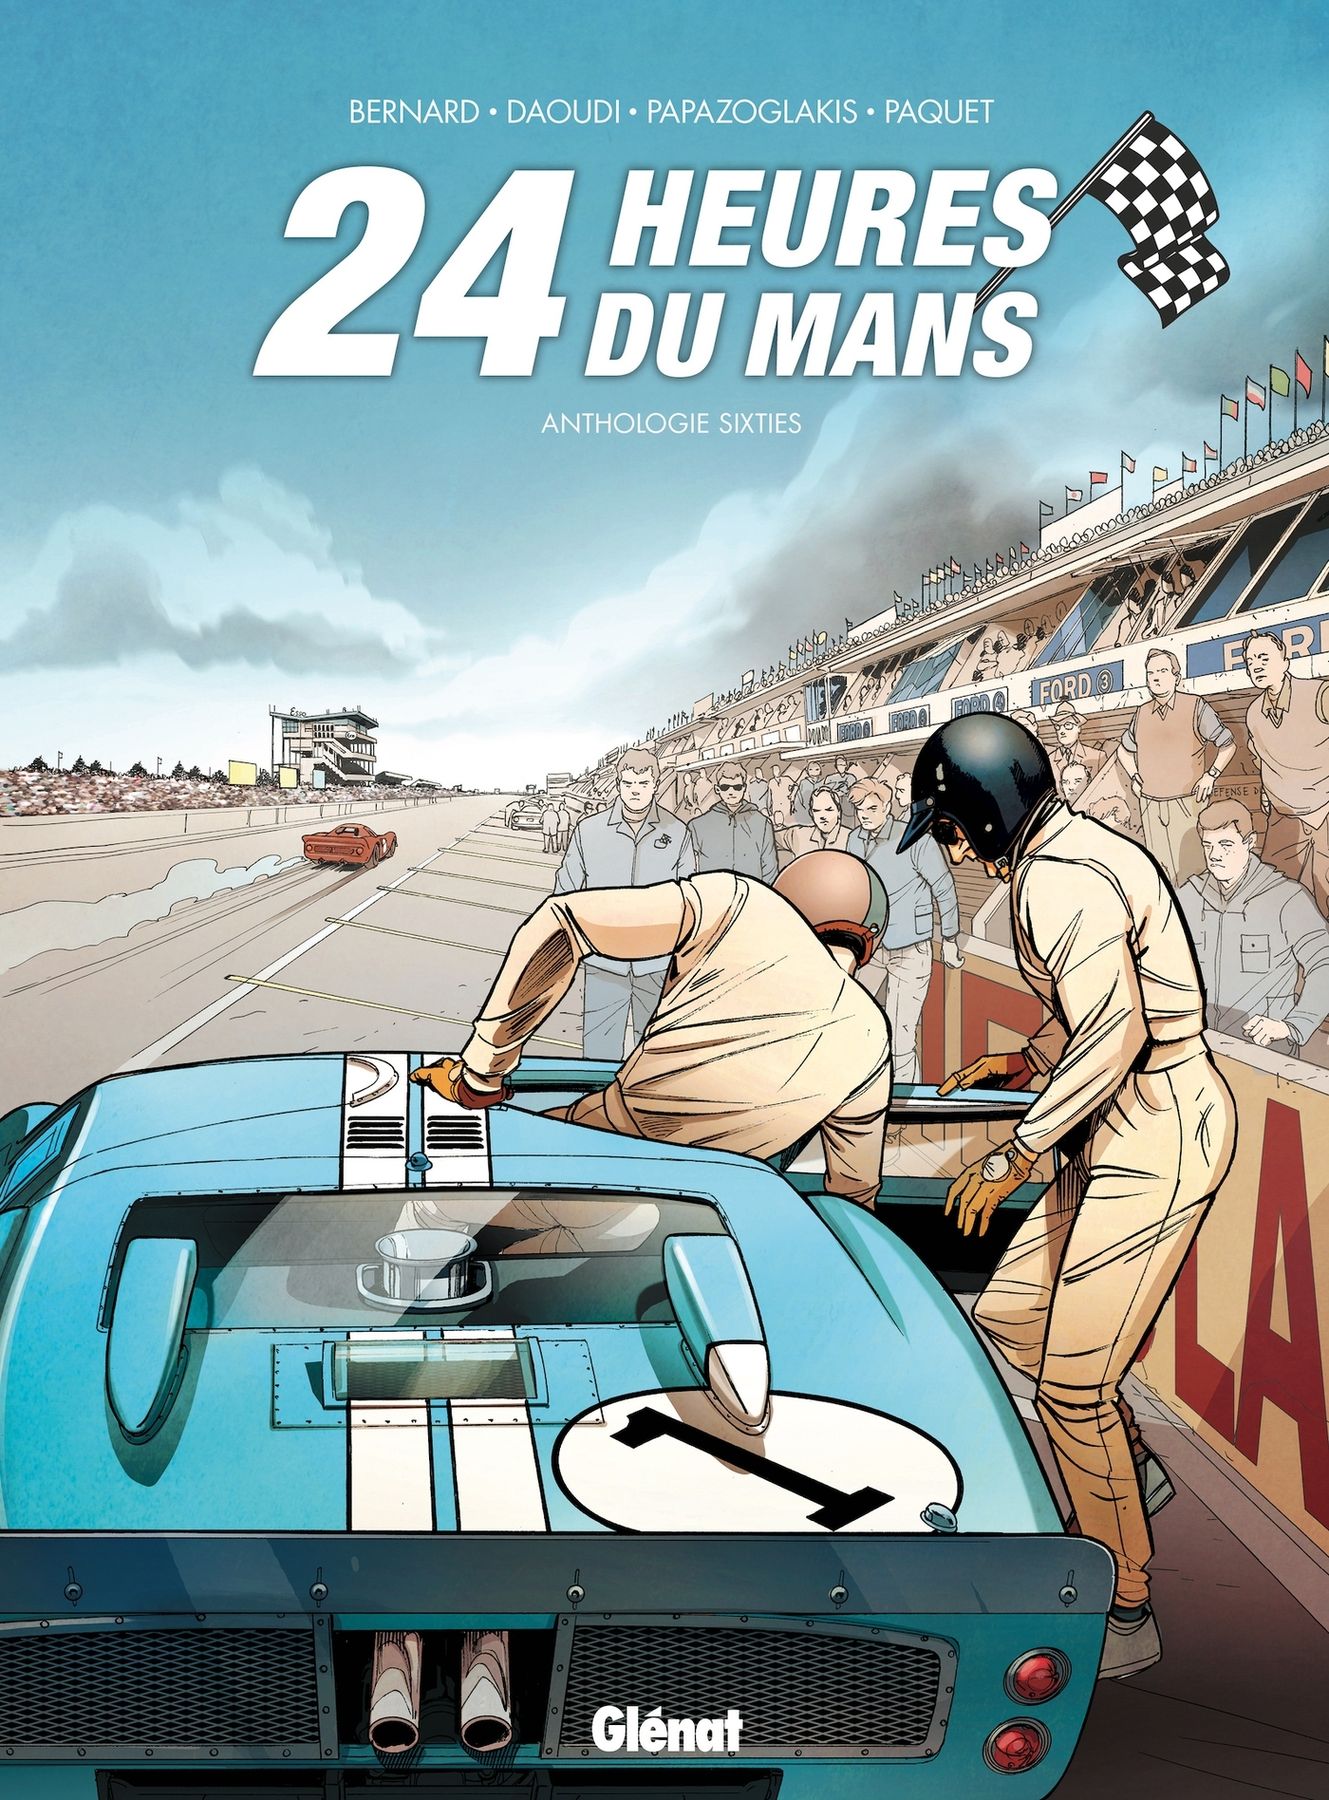 Couverture de l'album 24 Heures du Mans Anthologie sixties